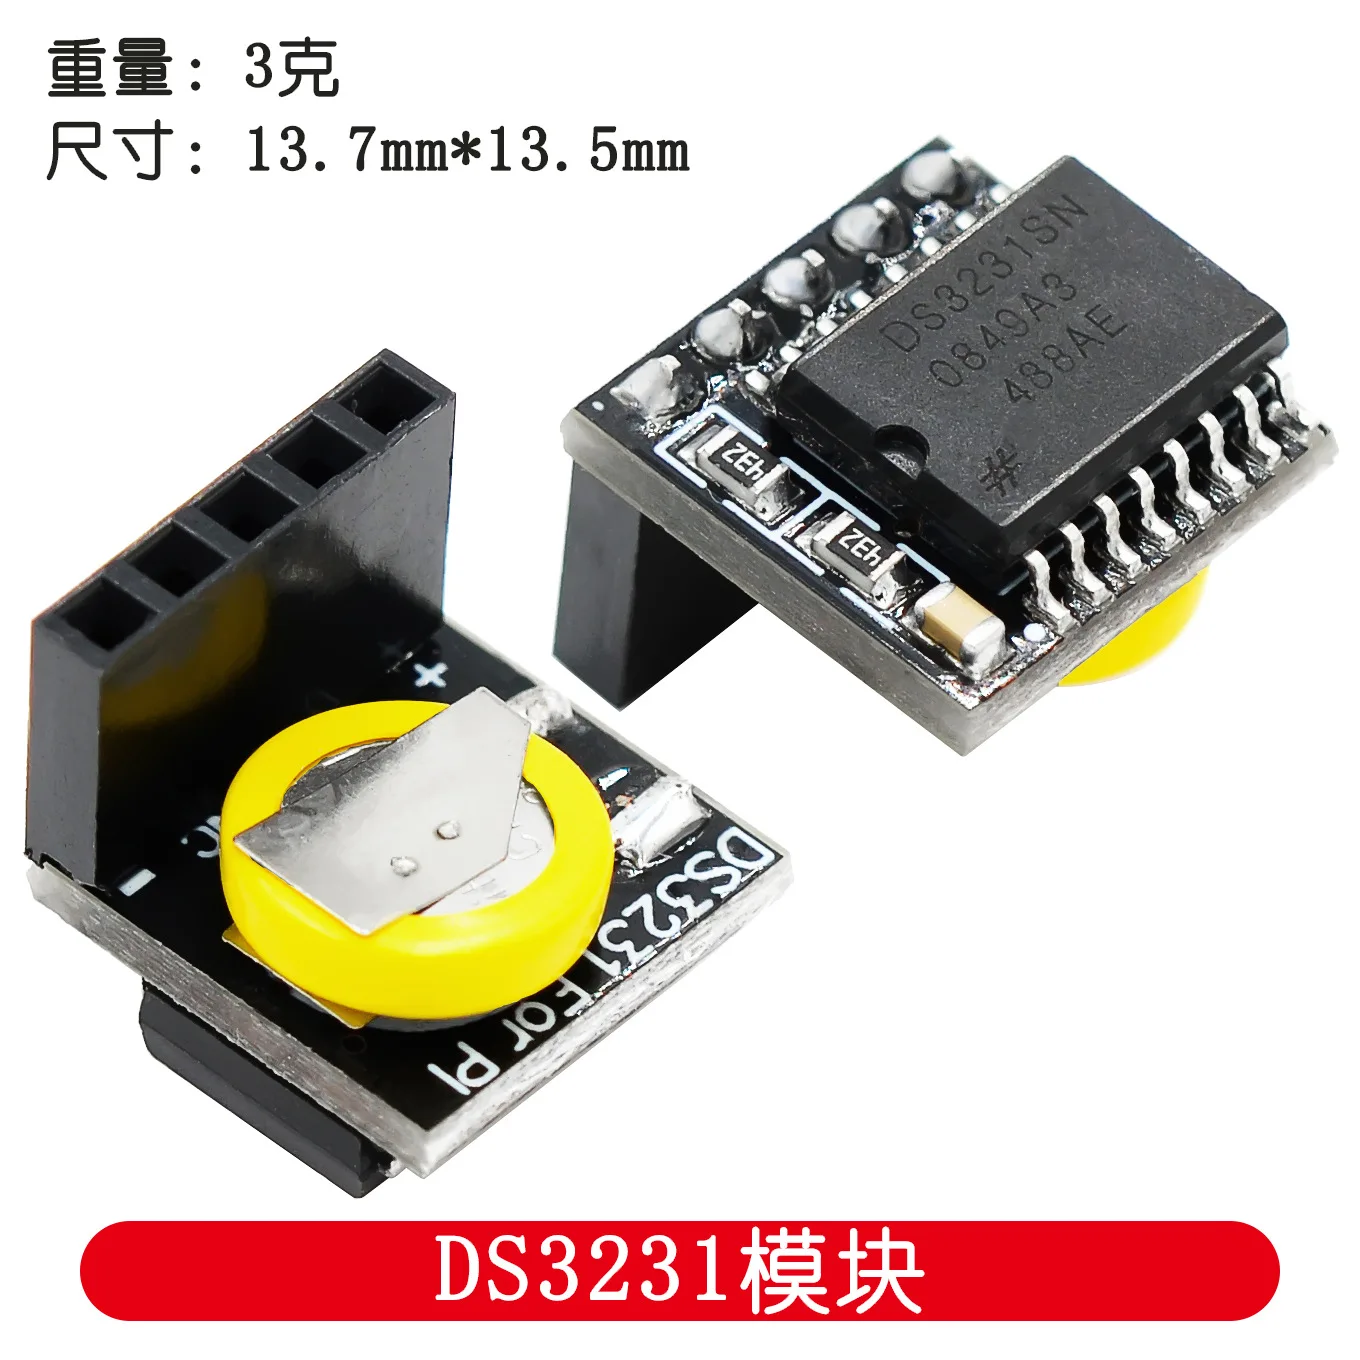 

Raspberry Pi 2 B High Precision Clock Module DS3231